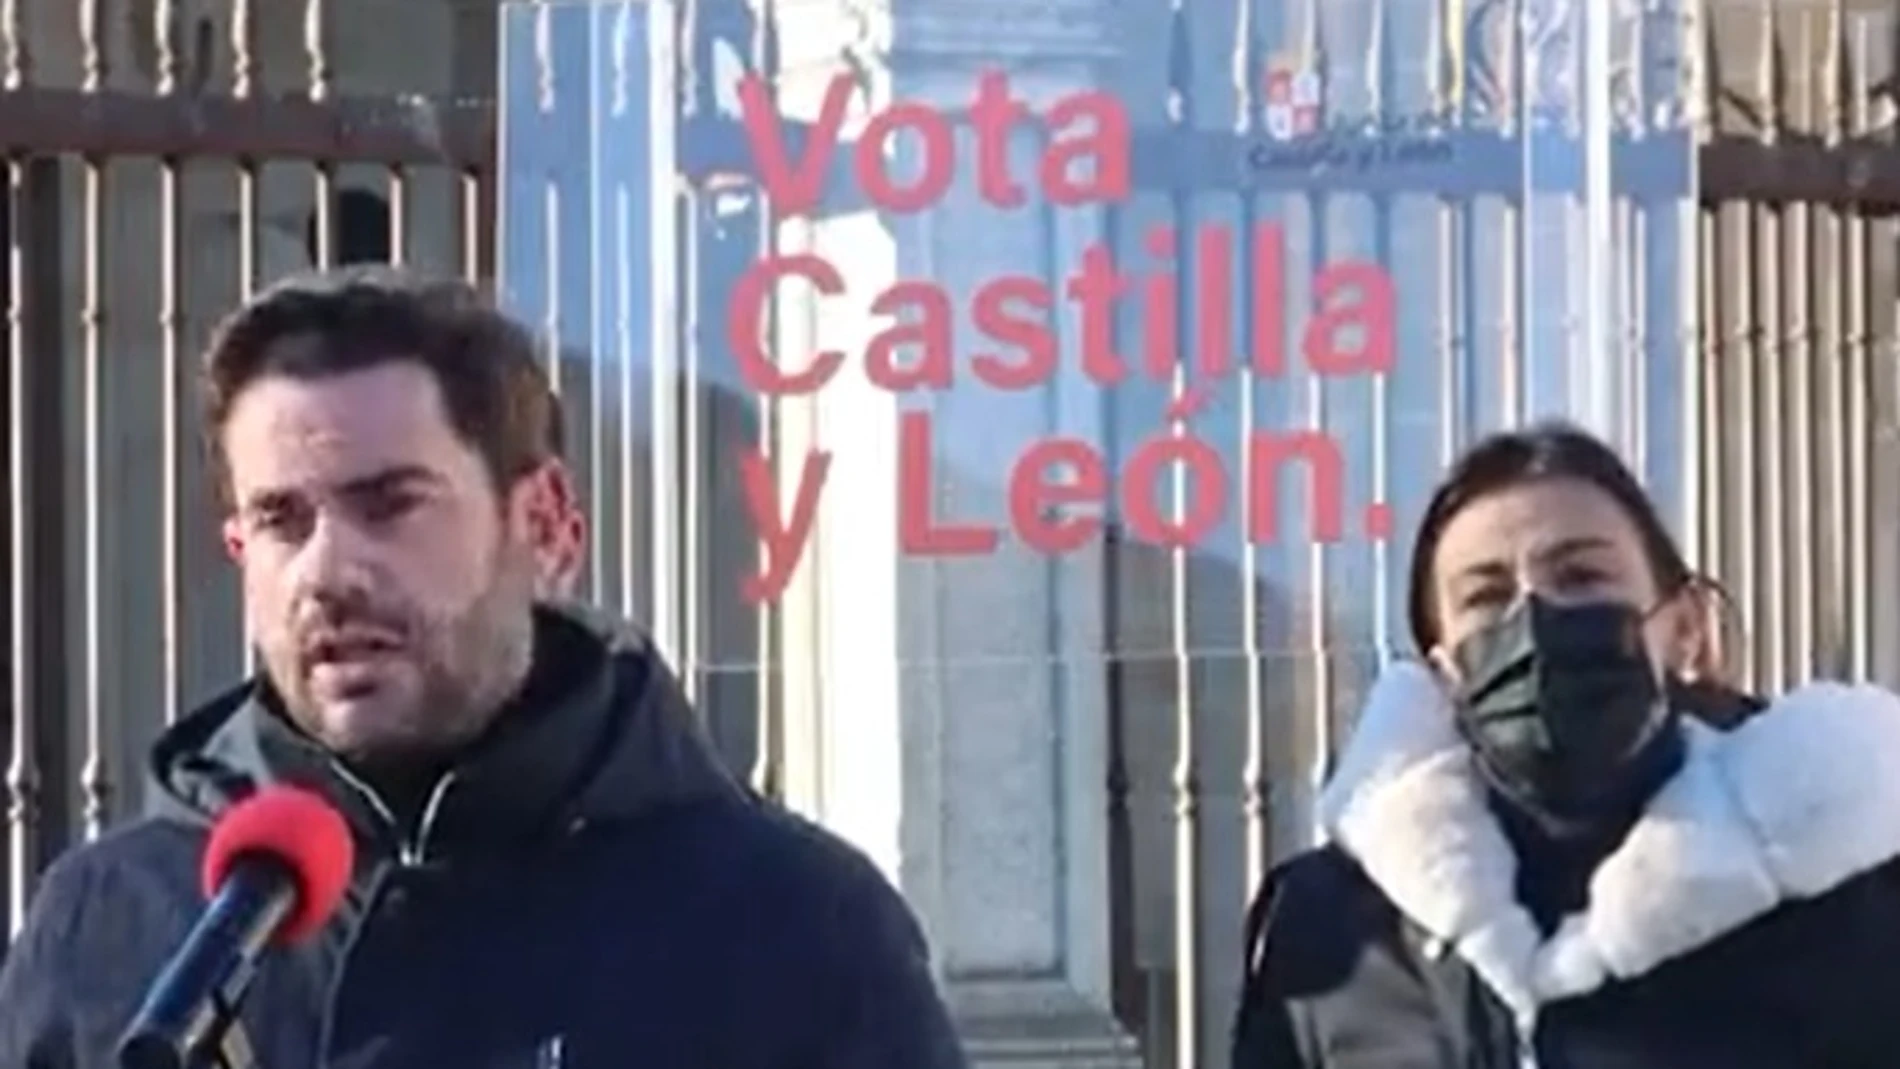 La candidata del PSOE por Zamora, Ana Sánchez, escucha a Antidio Fagúndez con el soporte equivocado al fondo, en el que se lee Vota Castilla y León junto al logotipo de la Junta